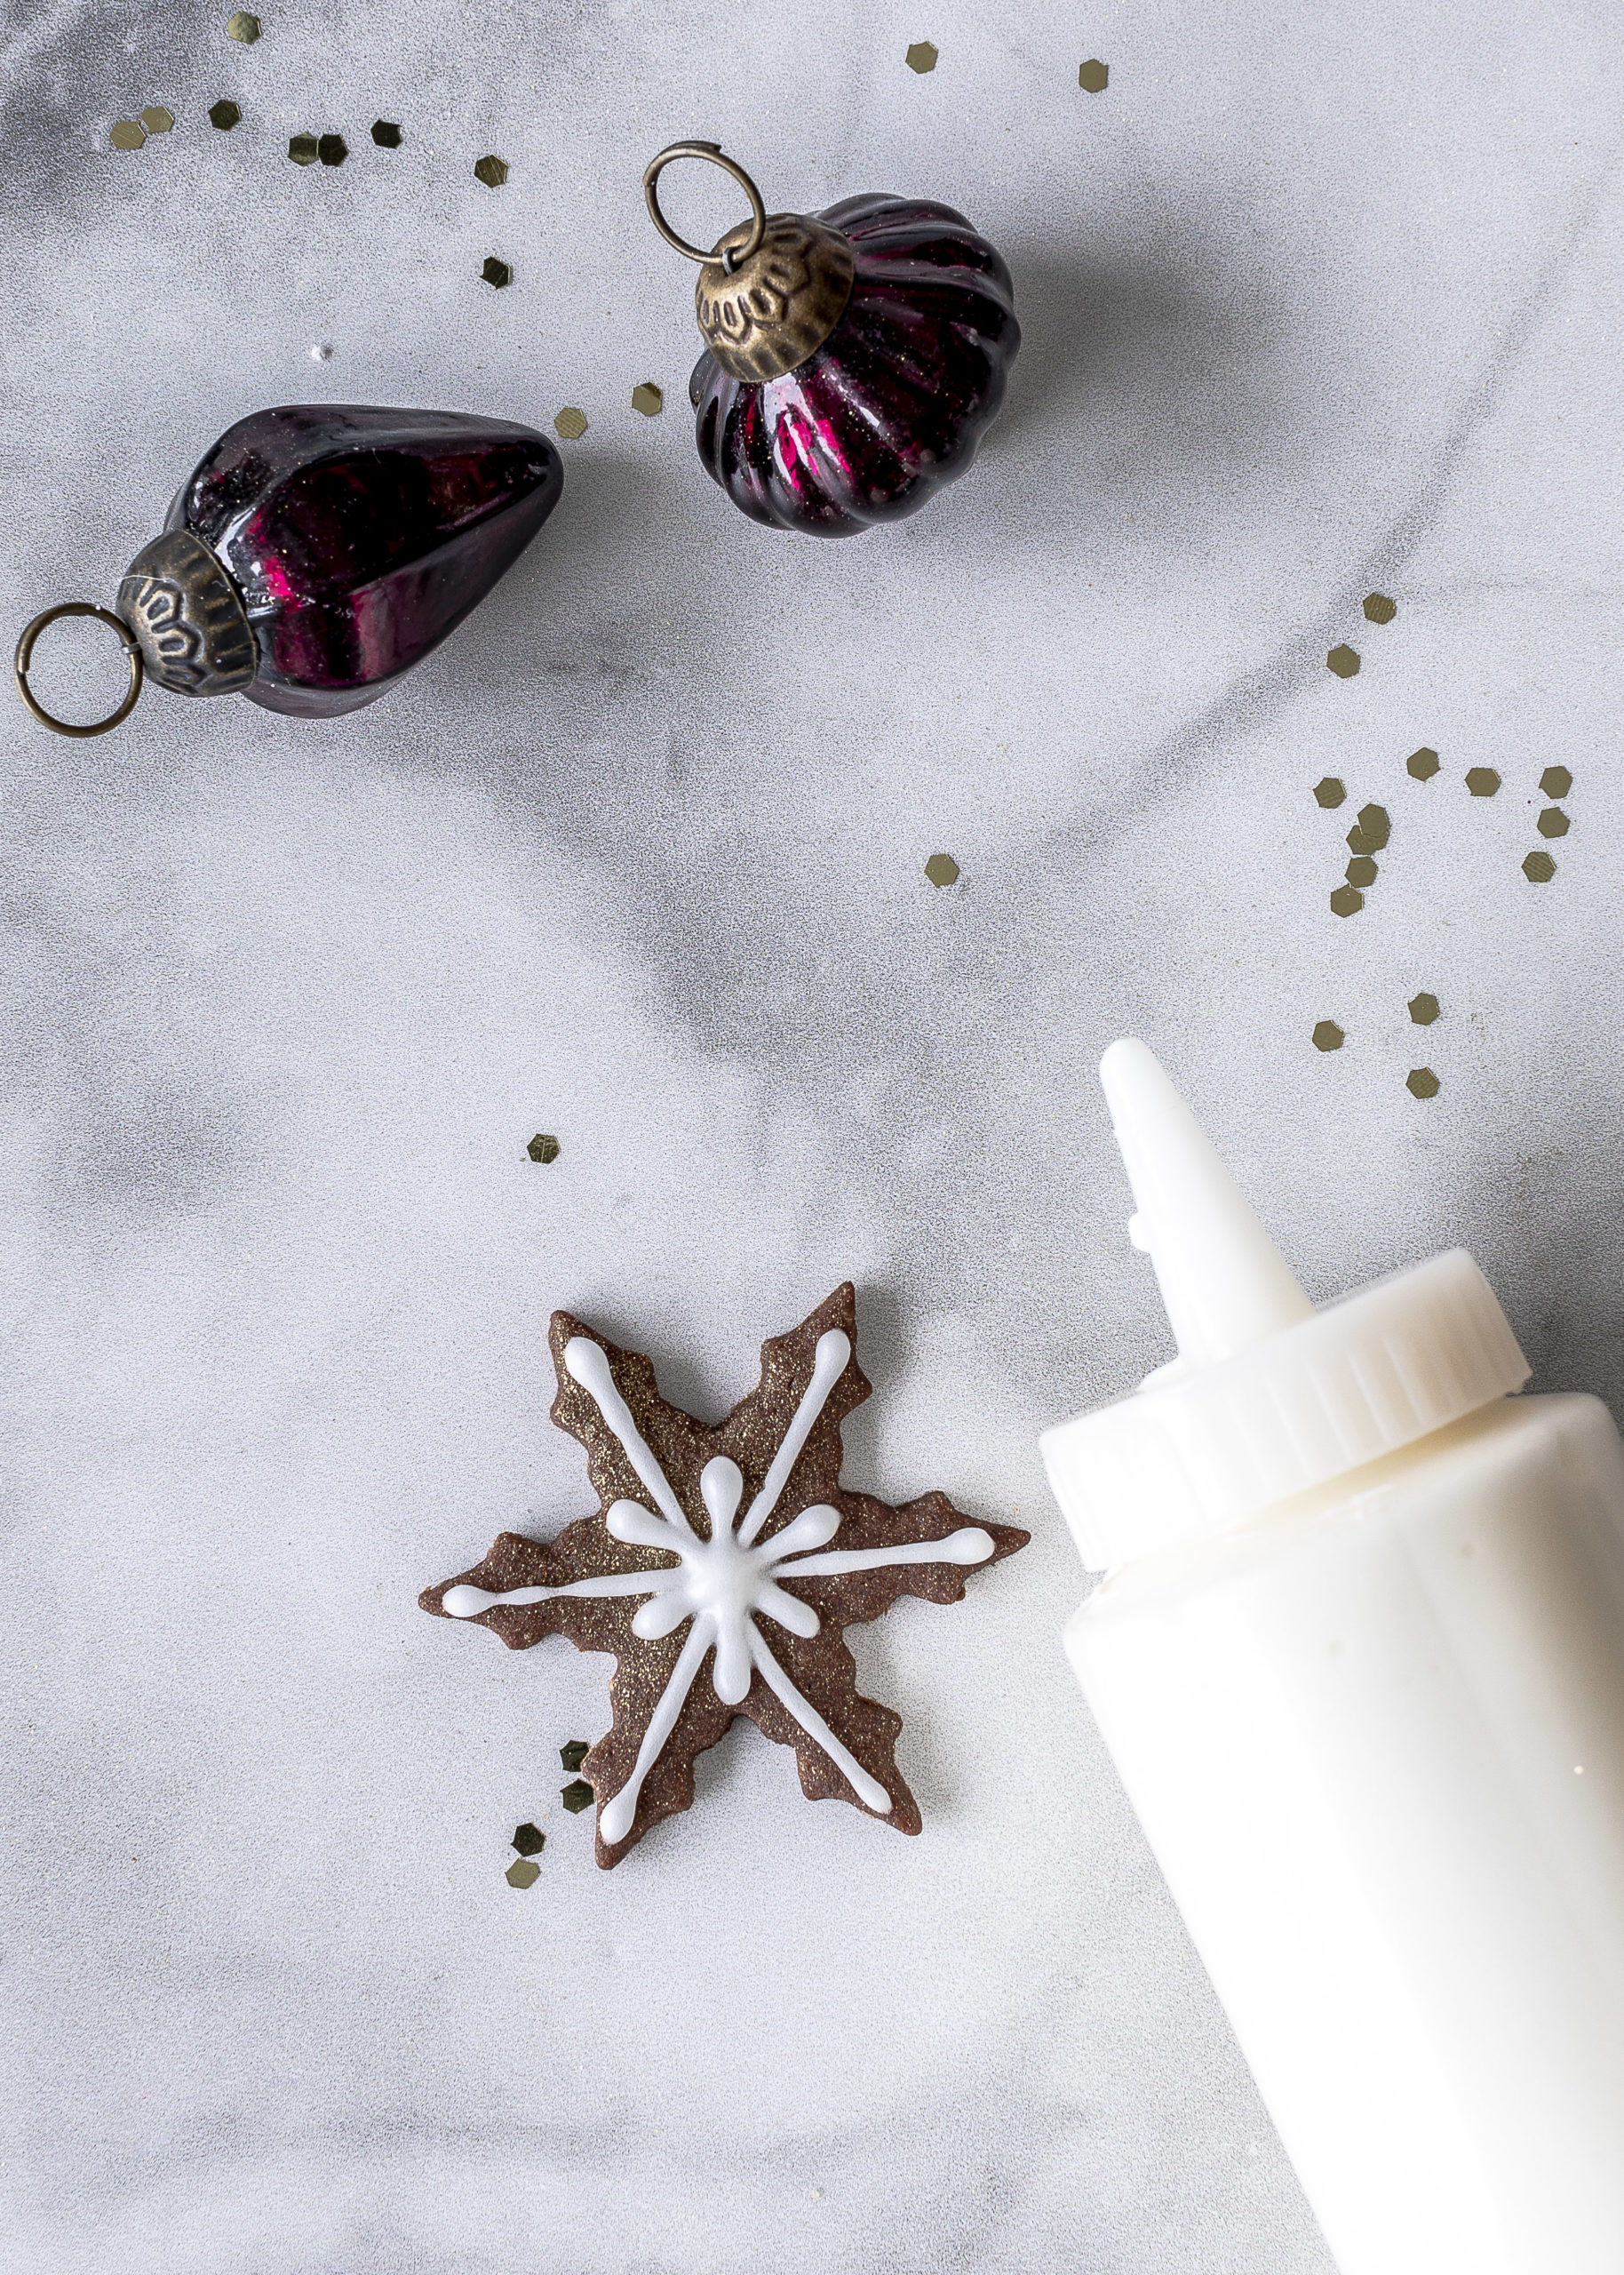 Einfaches Rezept für Schoko Plätzchen mit Royal Icing und Goldpuder Schneeflocken Schneekristalle backen Weihnachten #plätzchen #weihnachten #schokolade #royalicing Emma´s Lieblingsstücke